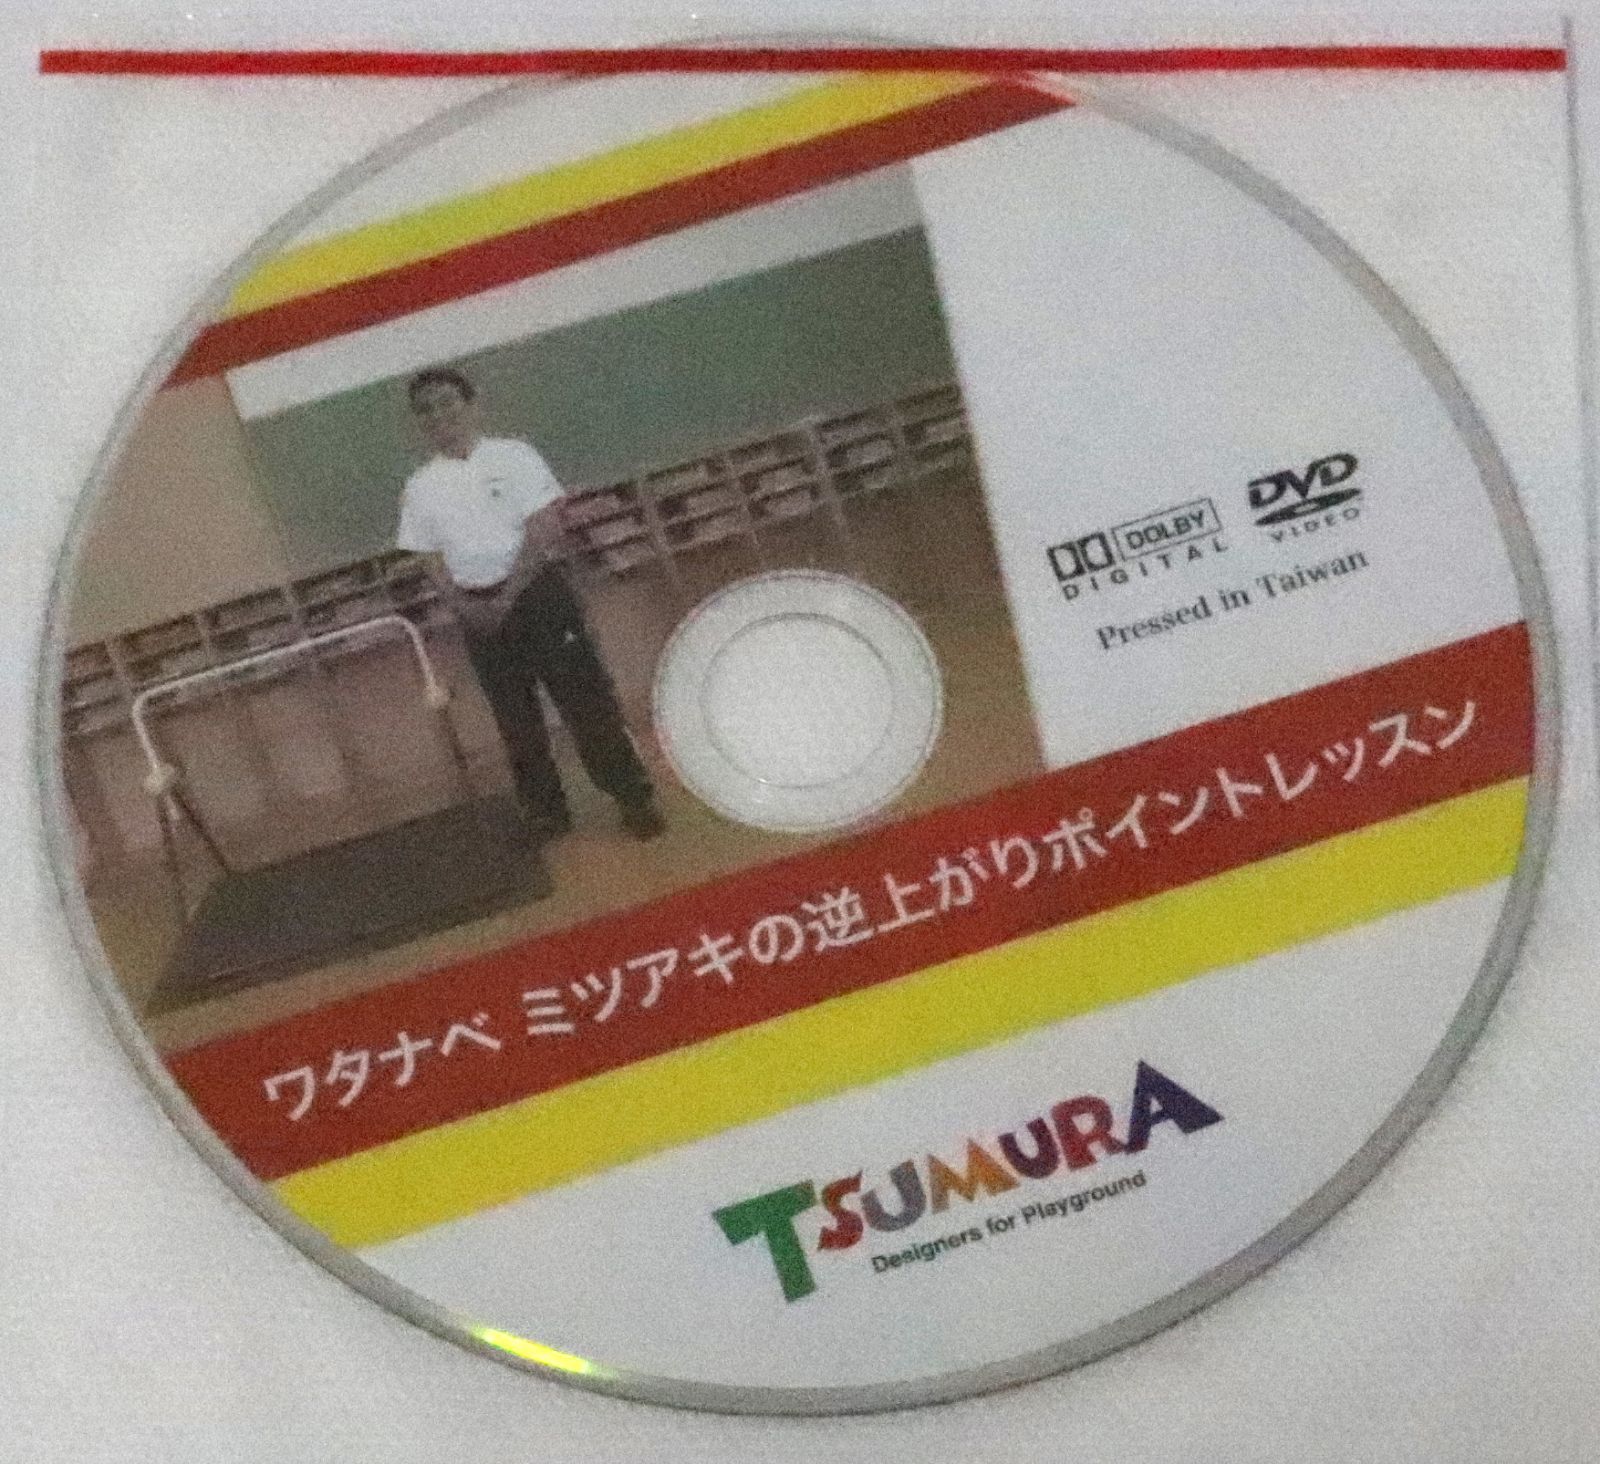 鉄棒 都村 ツムラ こども 鉄棒 DVD&説明書付き-